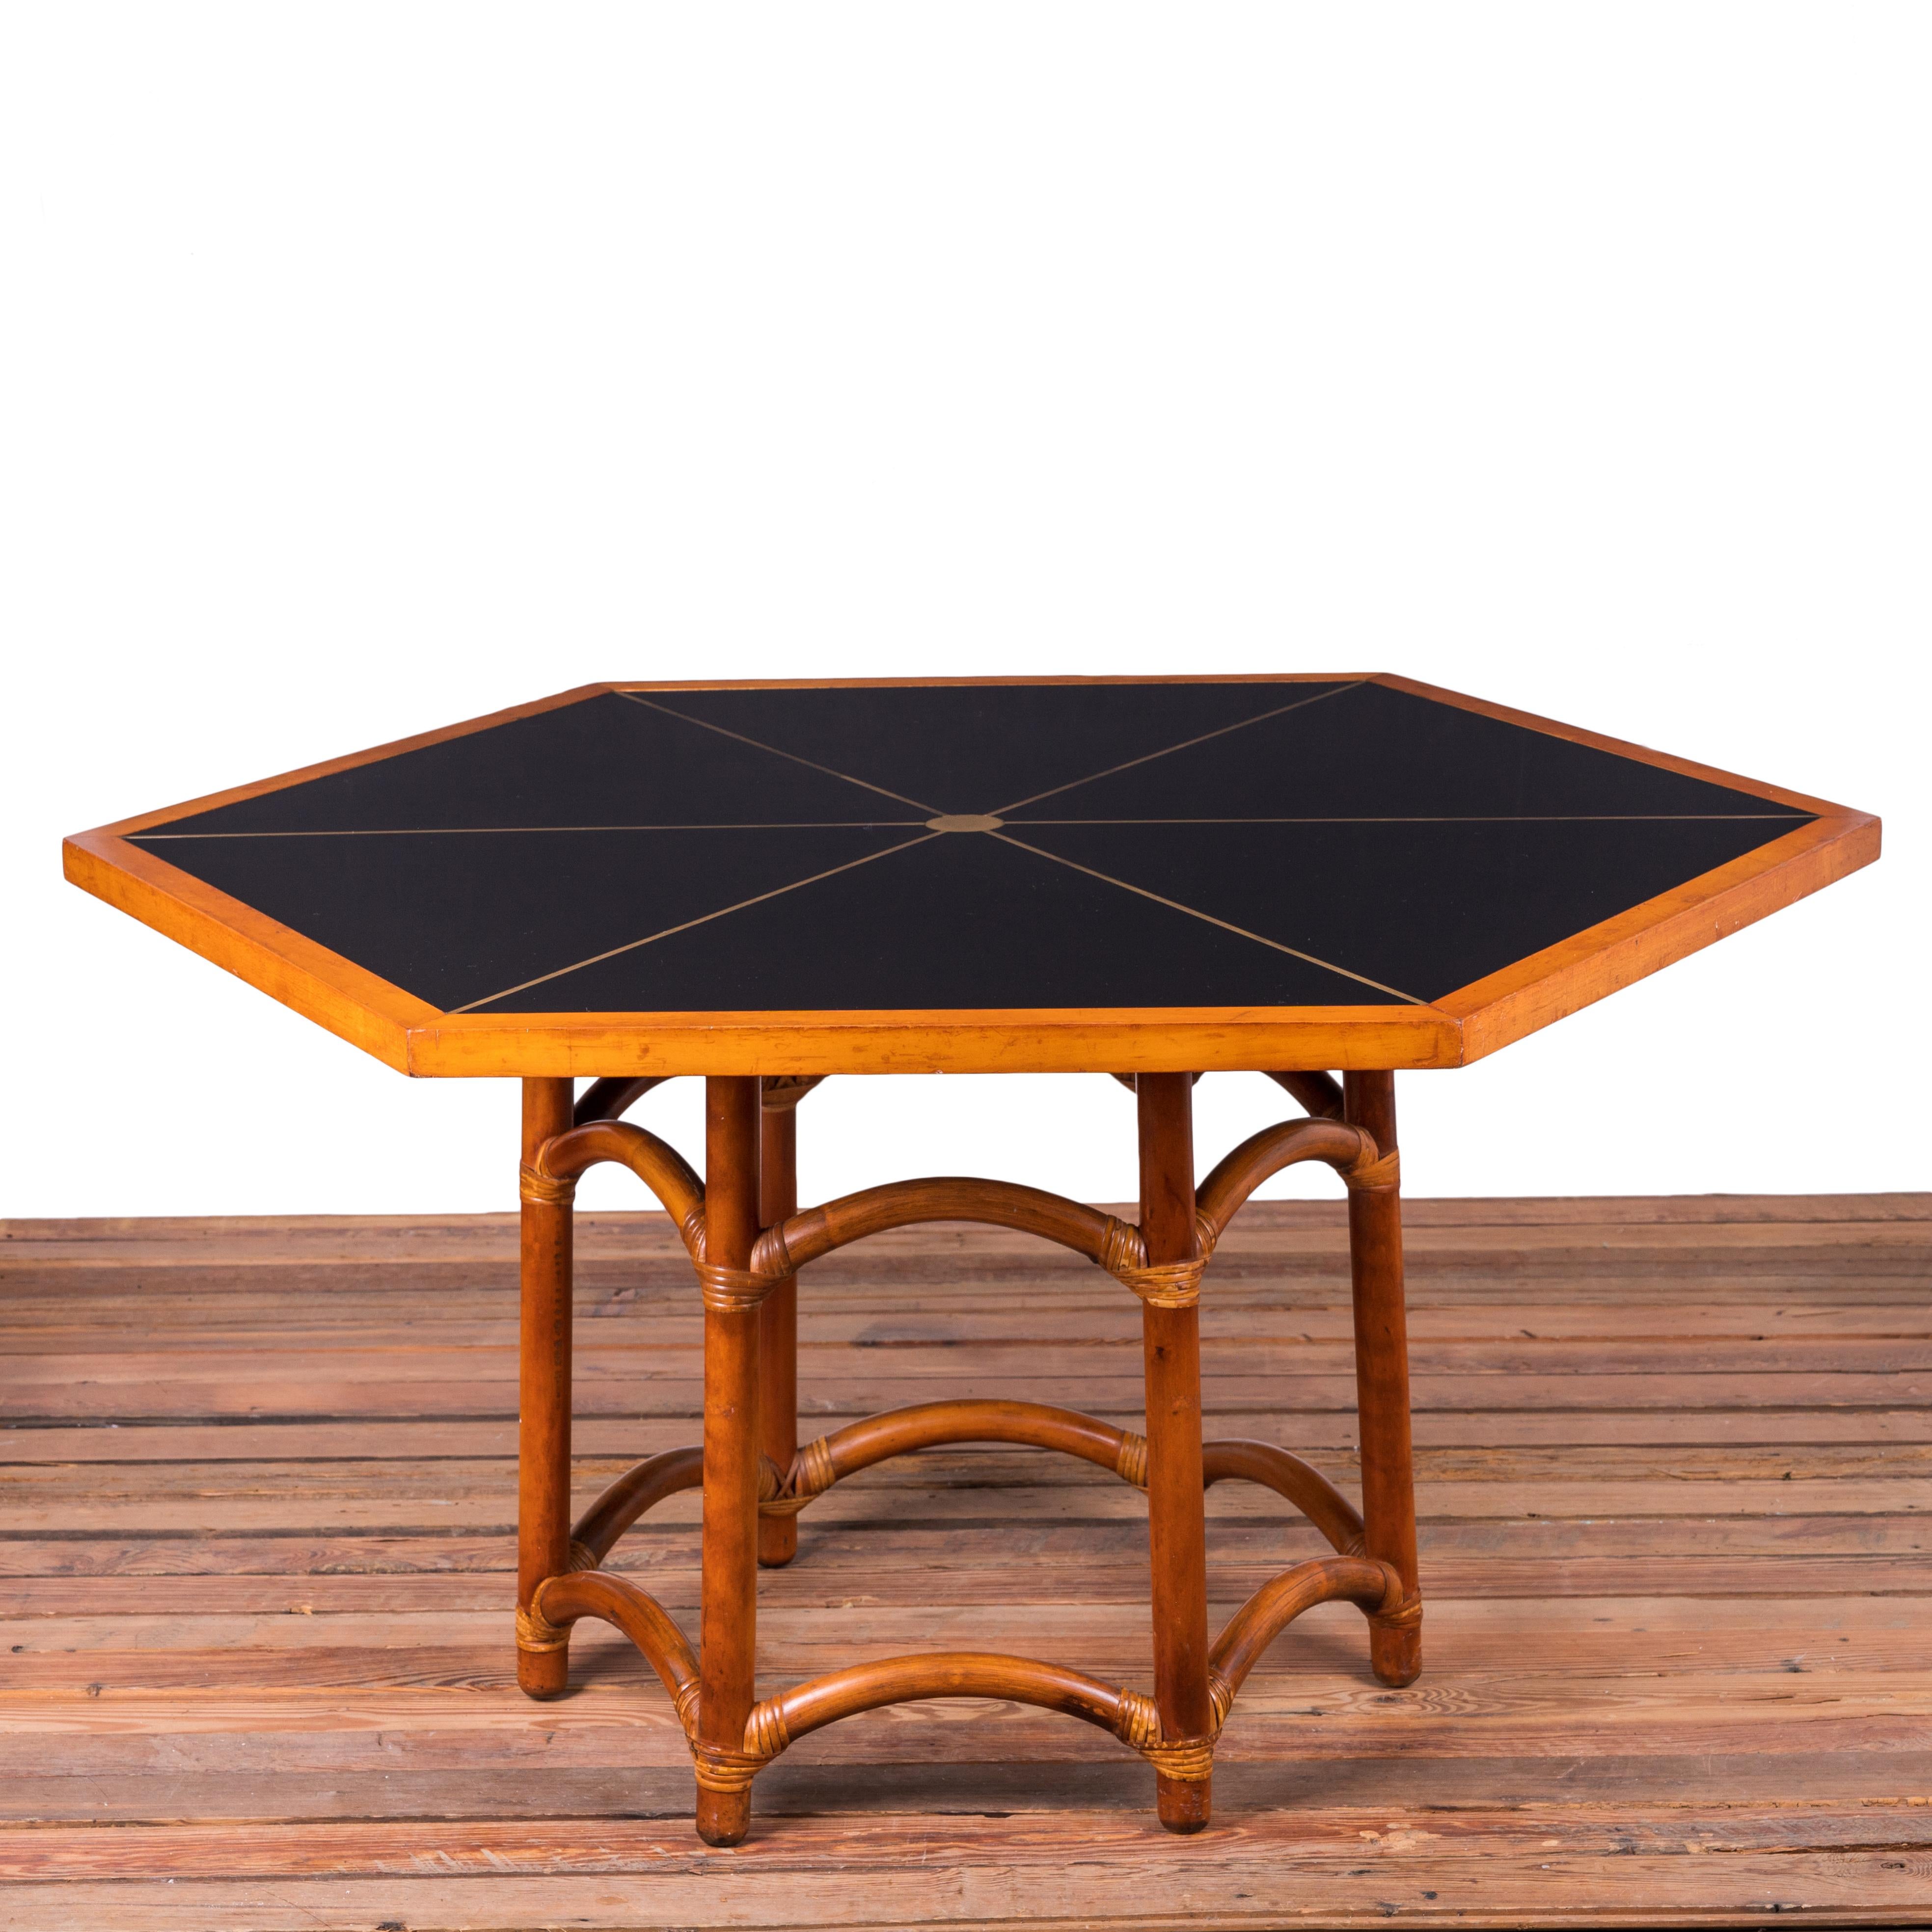 Ein sechseckiger Spieltisch, entworfen von Tommi Parzinger für Willow & Reed, Inc. um 1955.  

Schwarze Formica-Platte mit eingelegtem Messing in sechseckigem Ahornrahmen über einem umwickelten Rattansockel.

Top Maßnahmen 44 Zoll breit durch 51